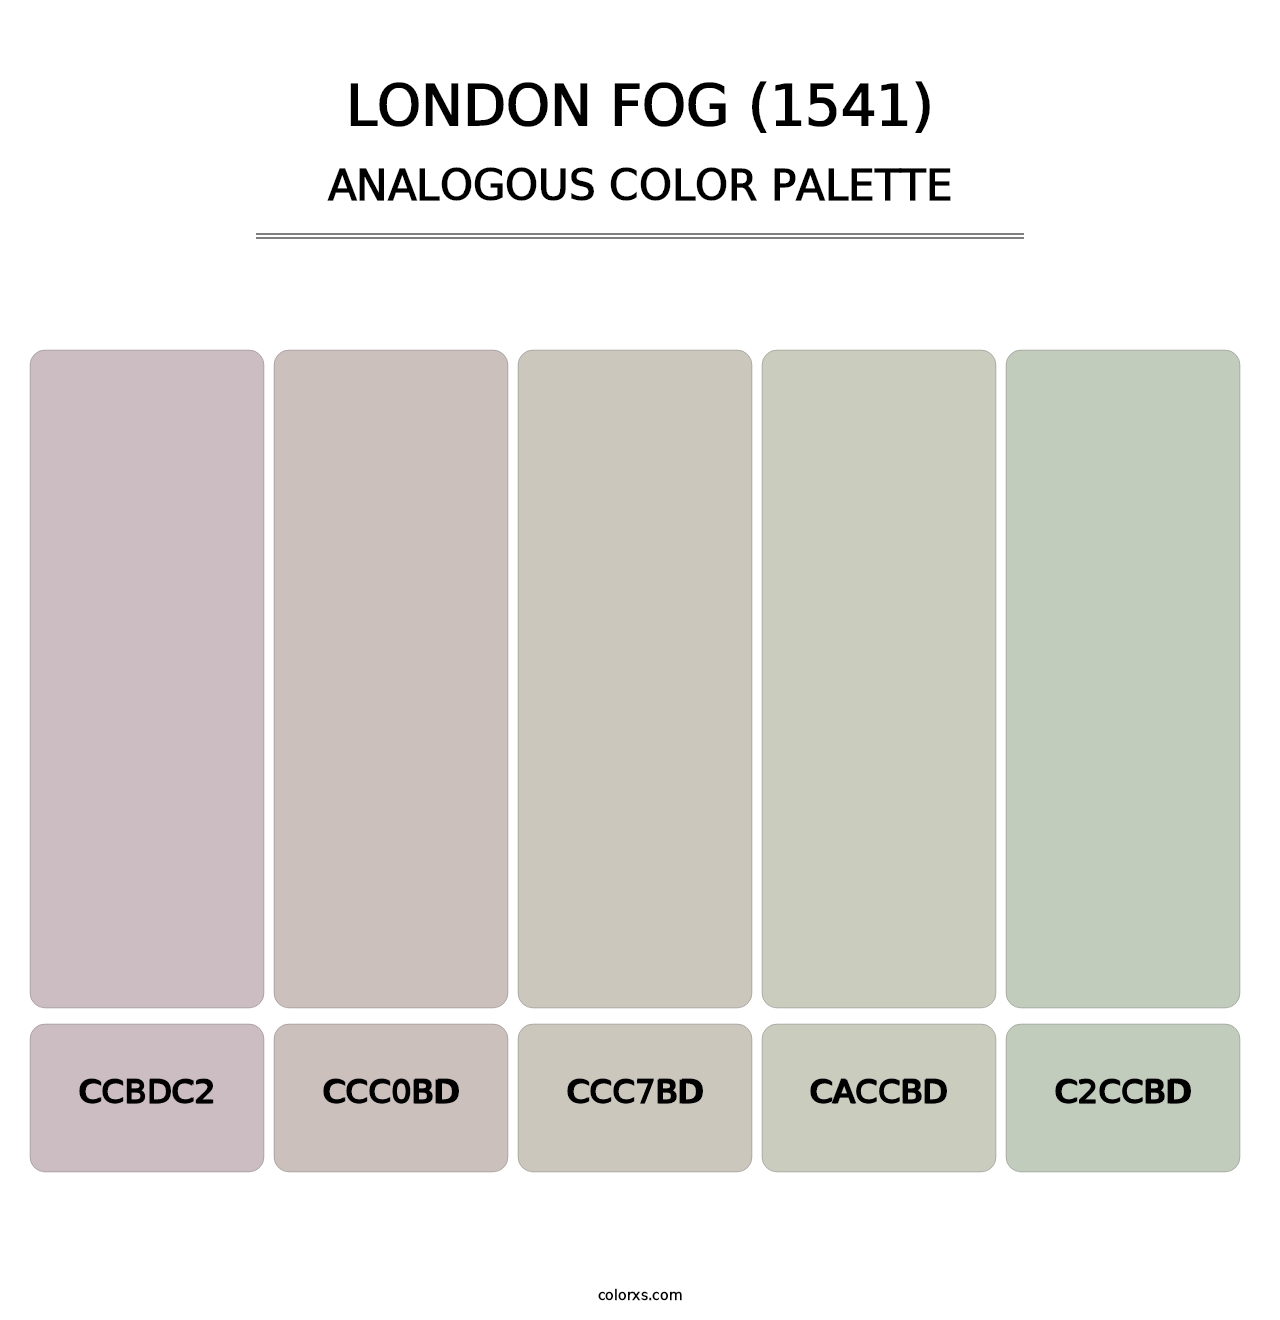 London Fog (1541) - Analogous Color Palette